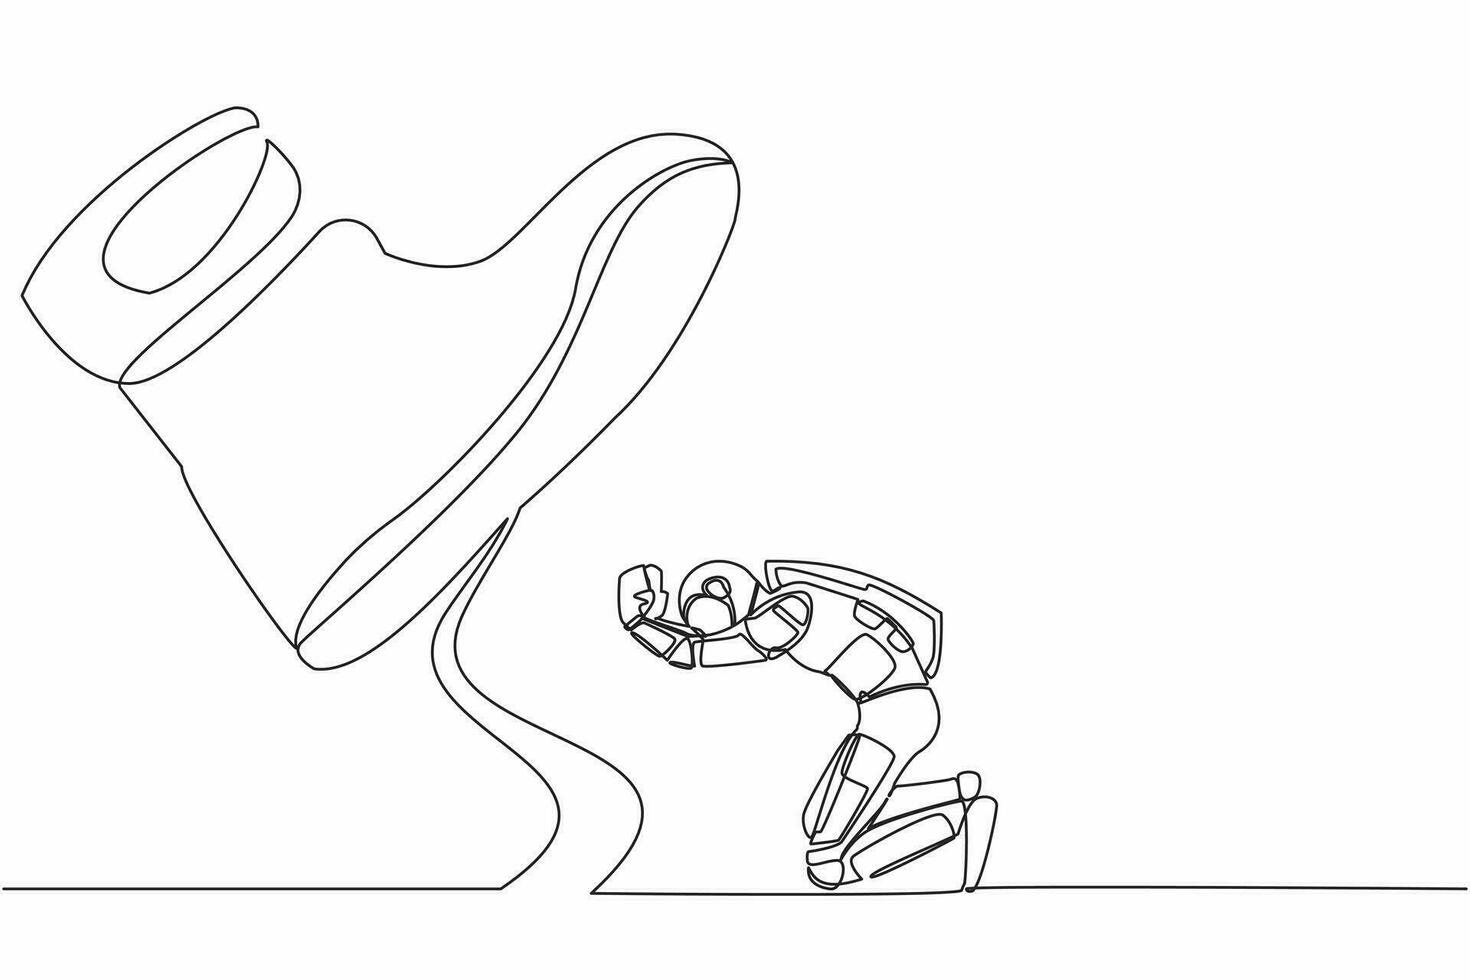 soltero continuo línea dibujo joven astronauta arrodillarse abajo debajo gigante pies. concepto para Ciencias autoridad, explotación, dictador cifra. cosmonauta profundo espacio. uno línea dibujar diseño vector ilustración